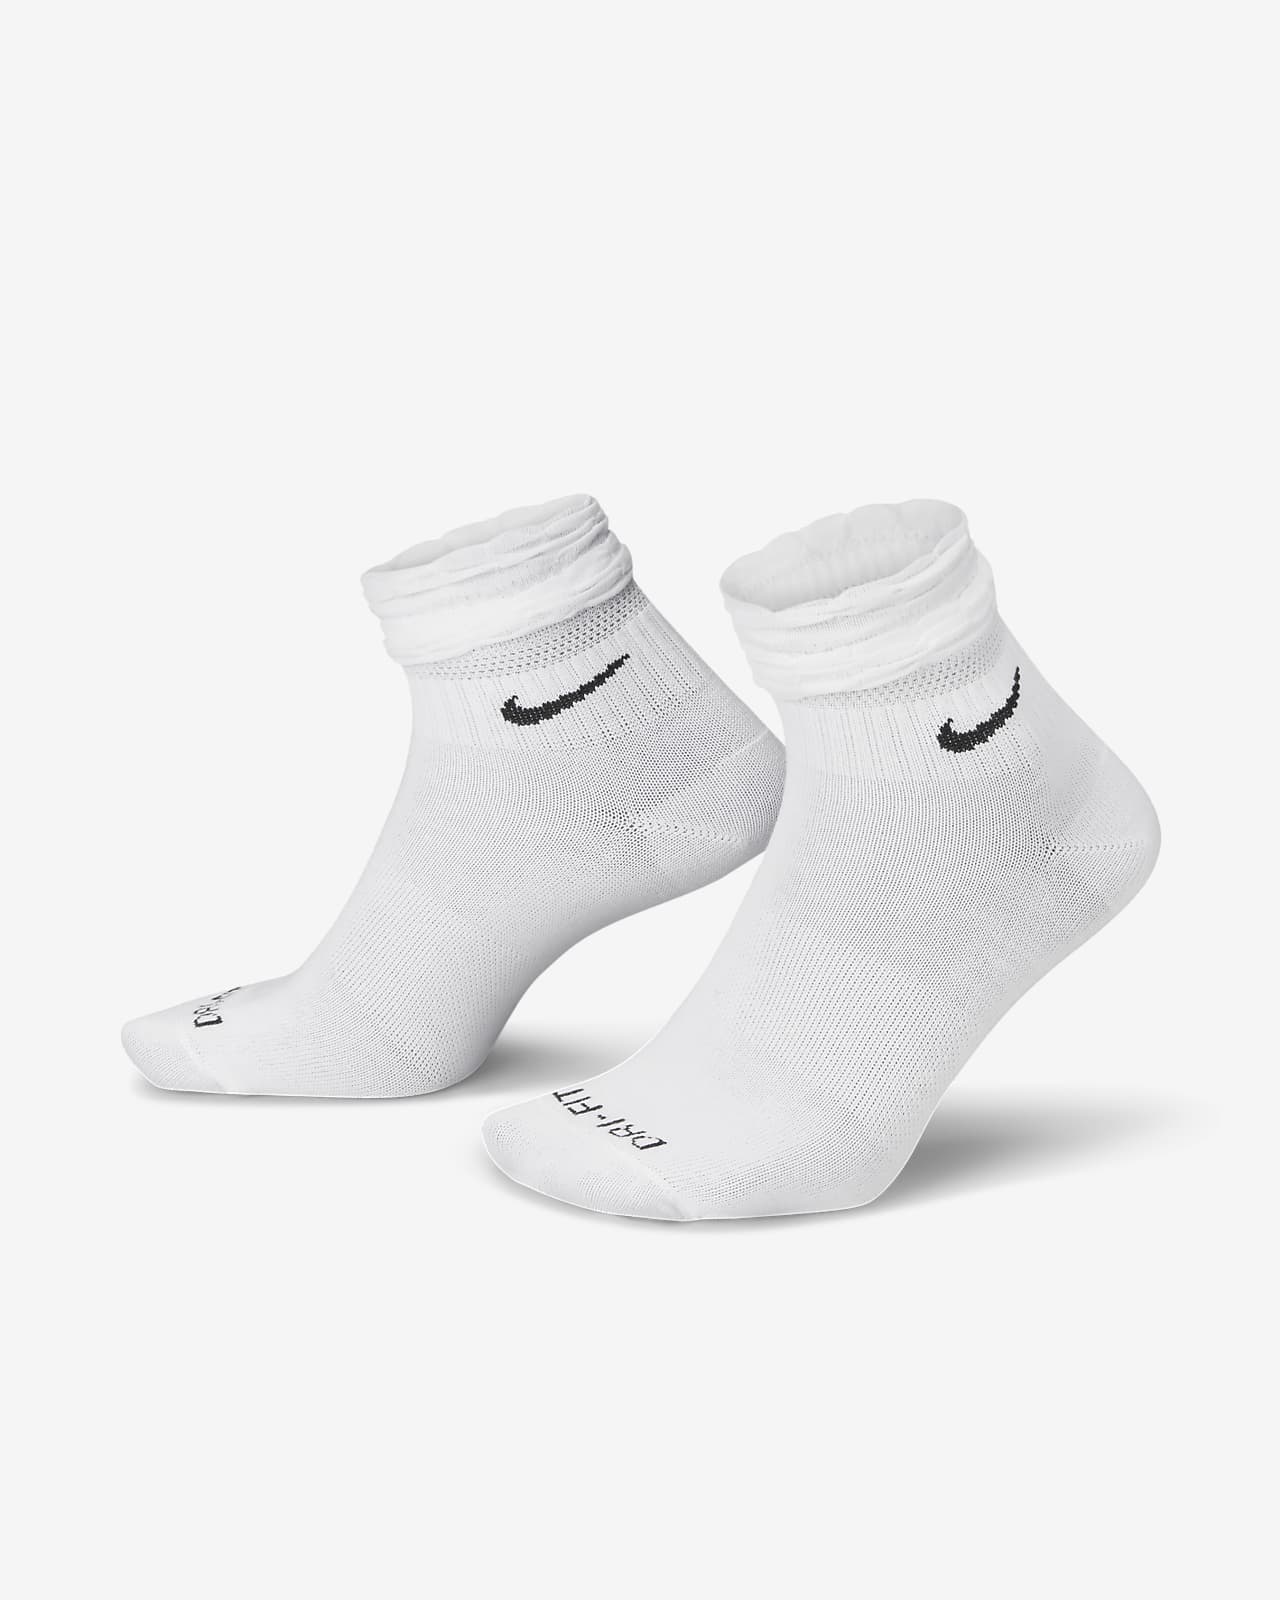 Nike Everyday Antrenman Bilek Çorapları